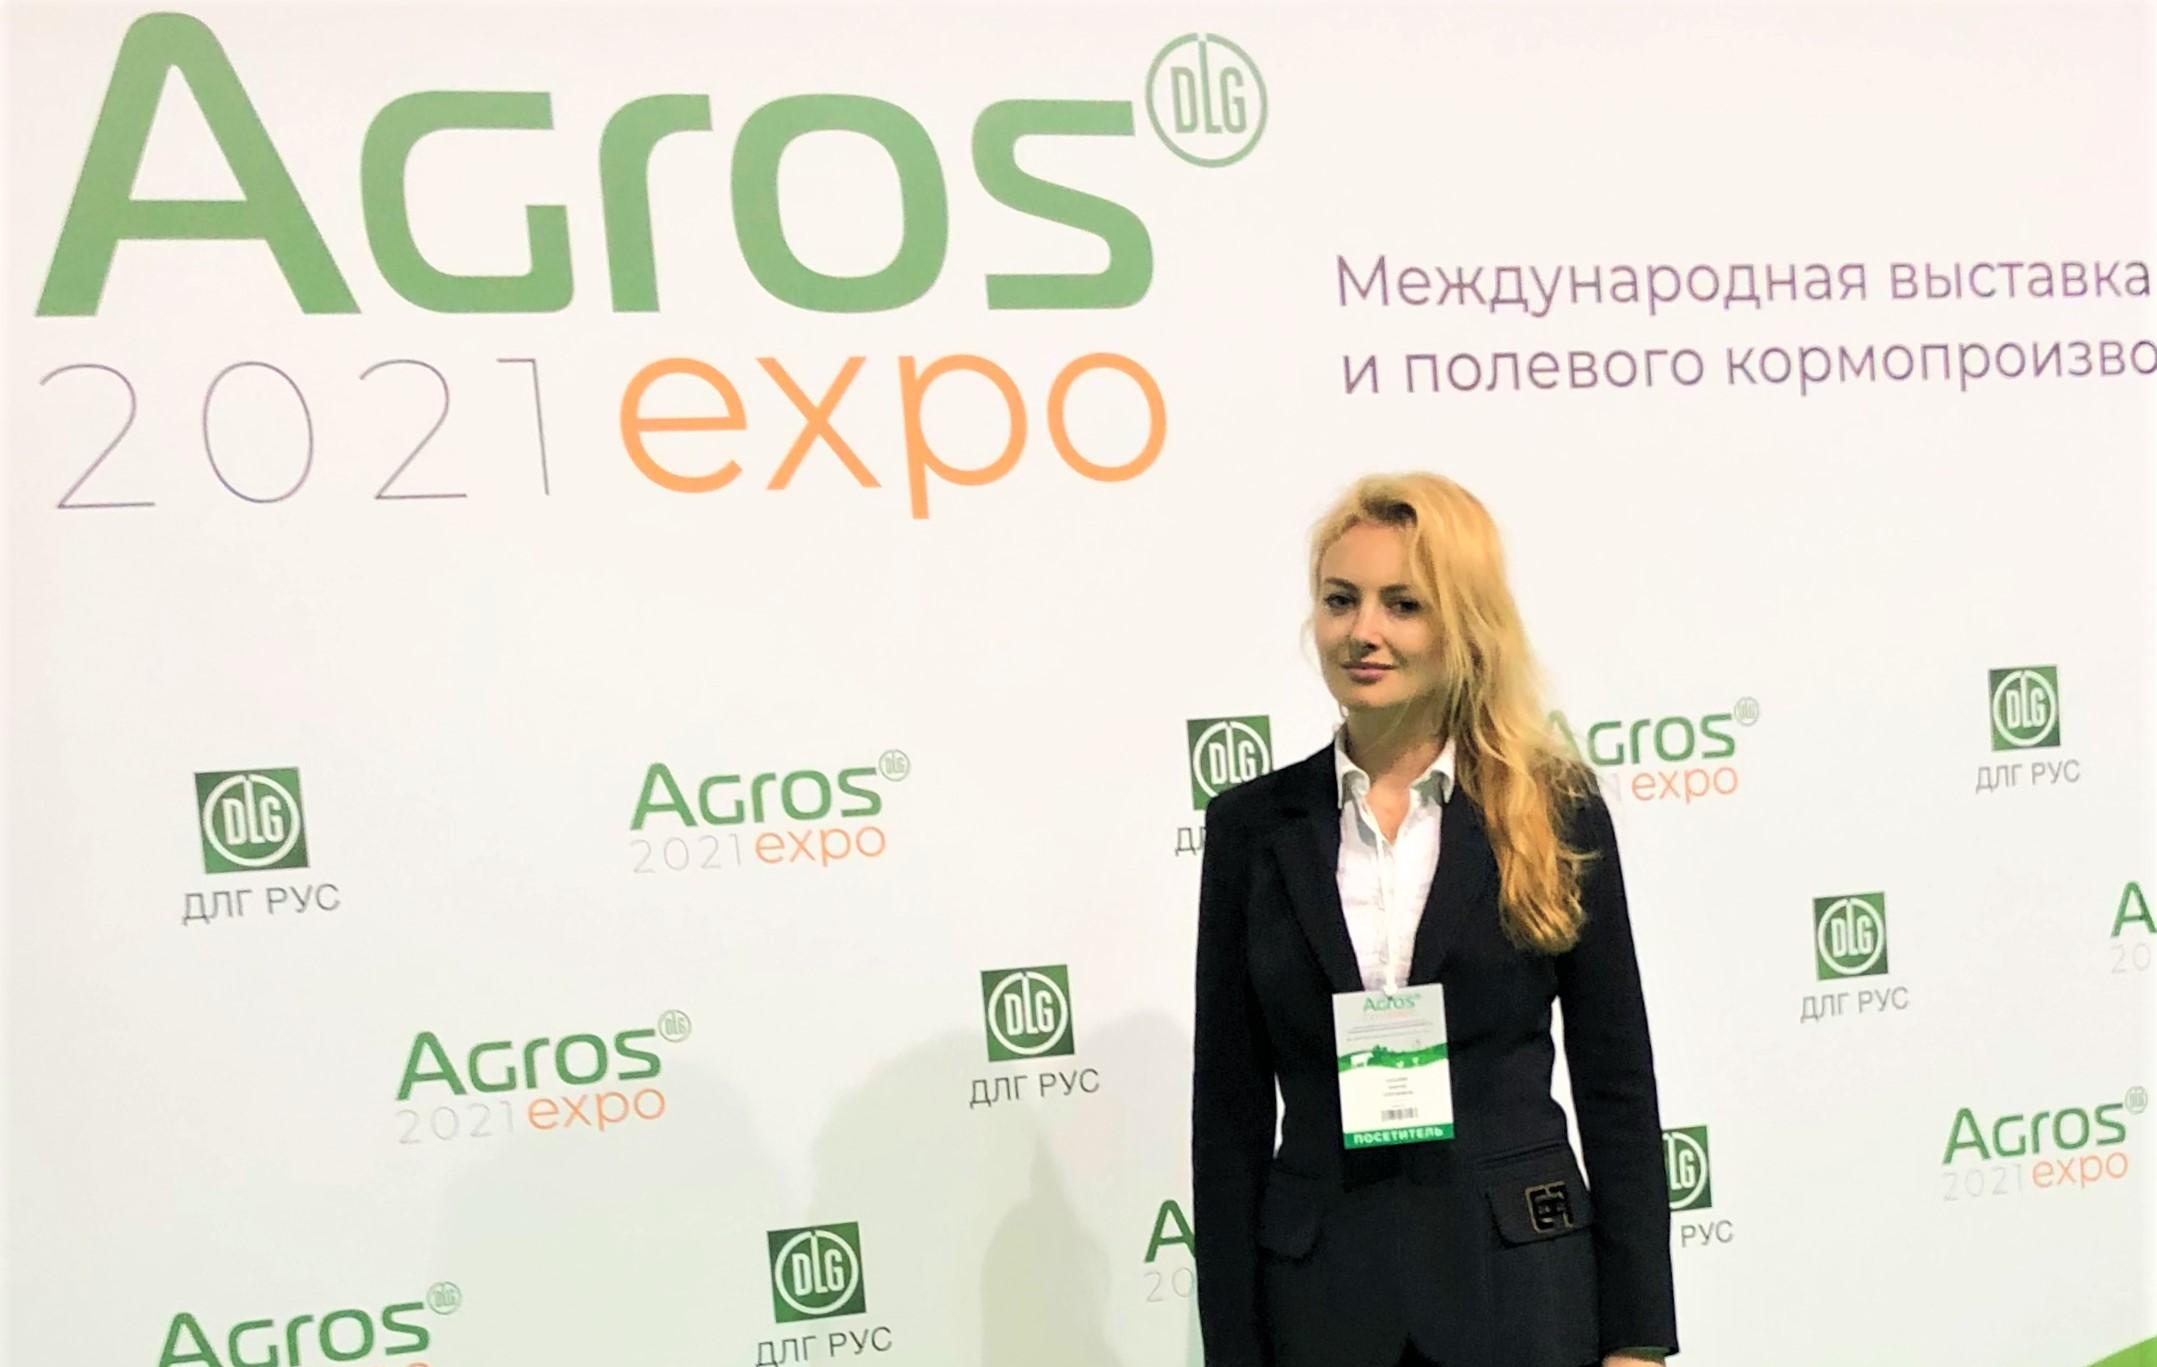 Международная выставка AGROS EXPO 2021